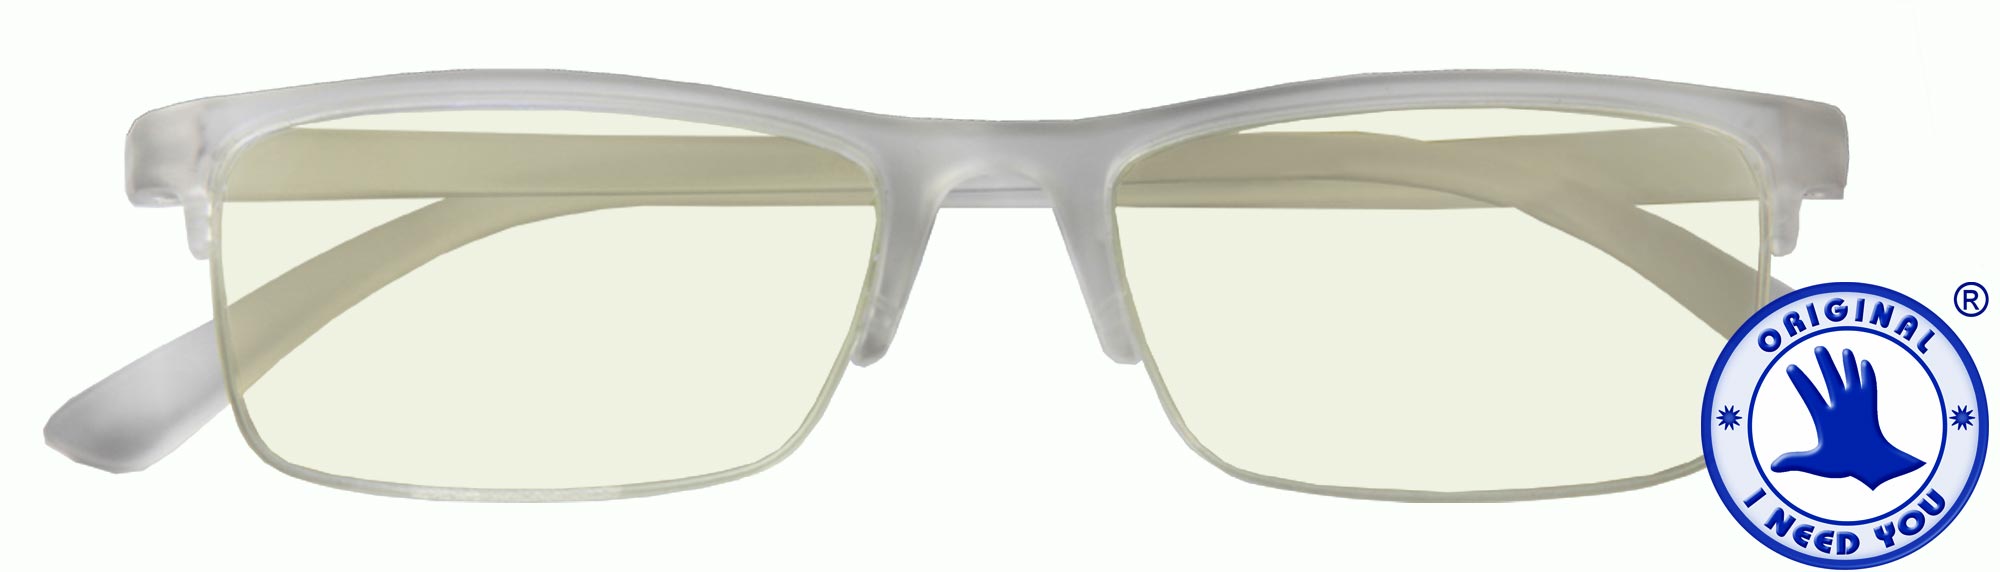 Arbeitsplatzbrille mit Bildschirmgläsern inkl. Blaulichtfilter – Grahl  Optik Brillenmode